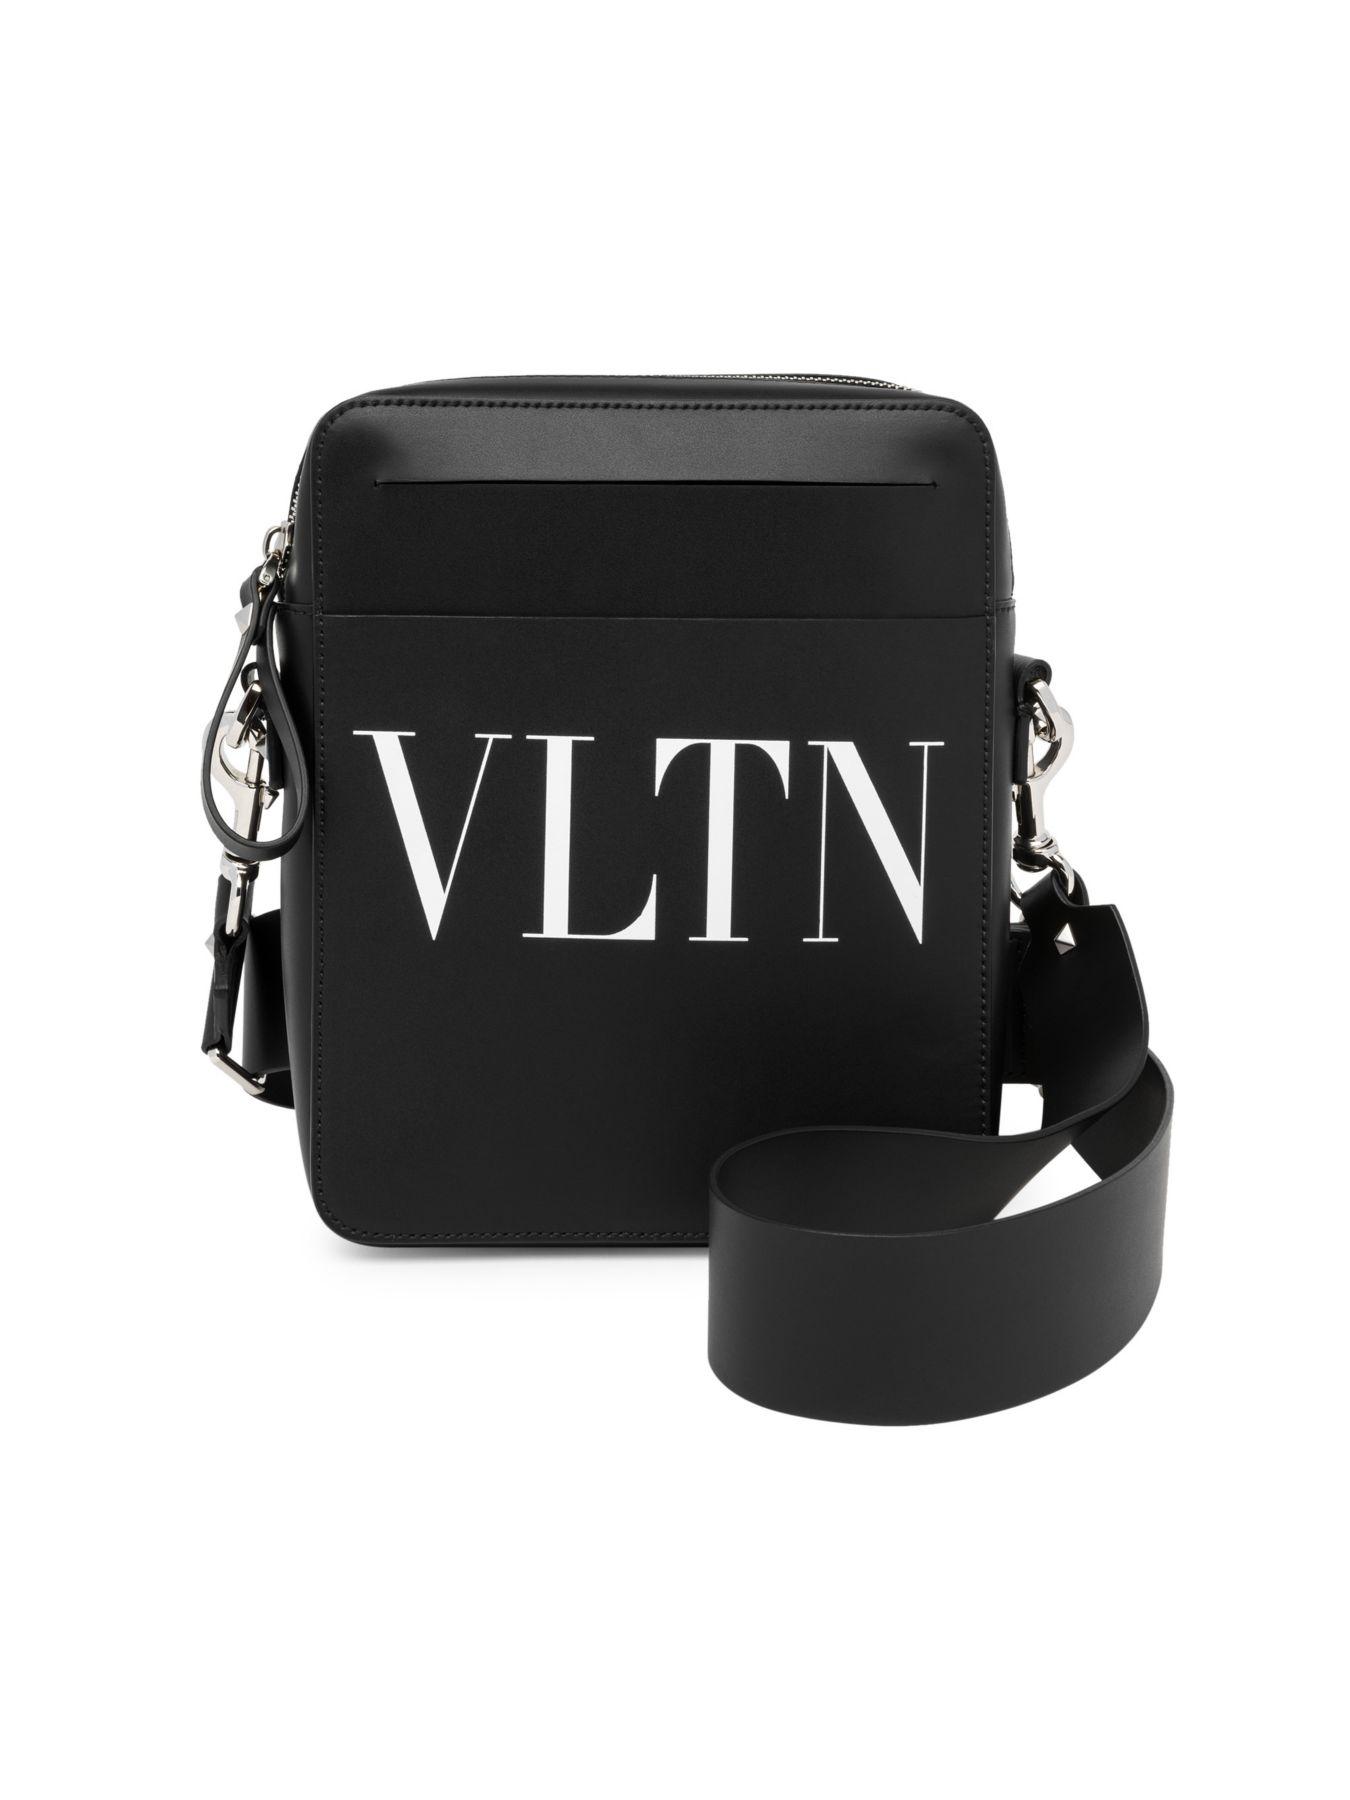 Valentino Vltn Leather Crossbody Bag in Black White (Black) for Men - Lyst